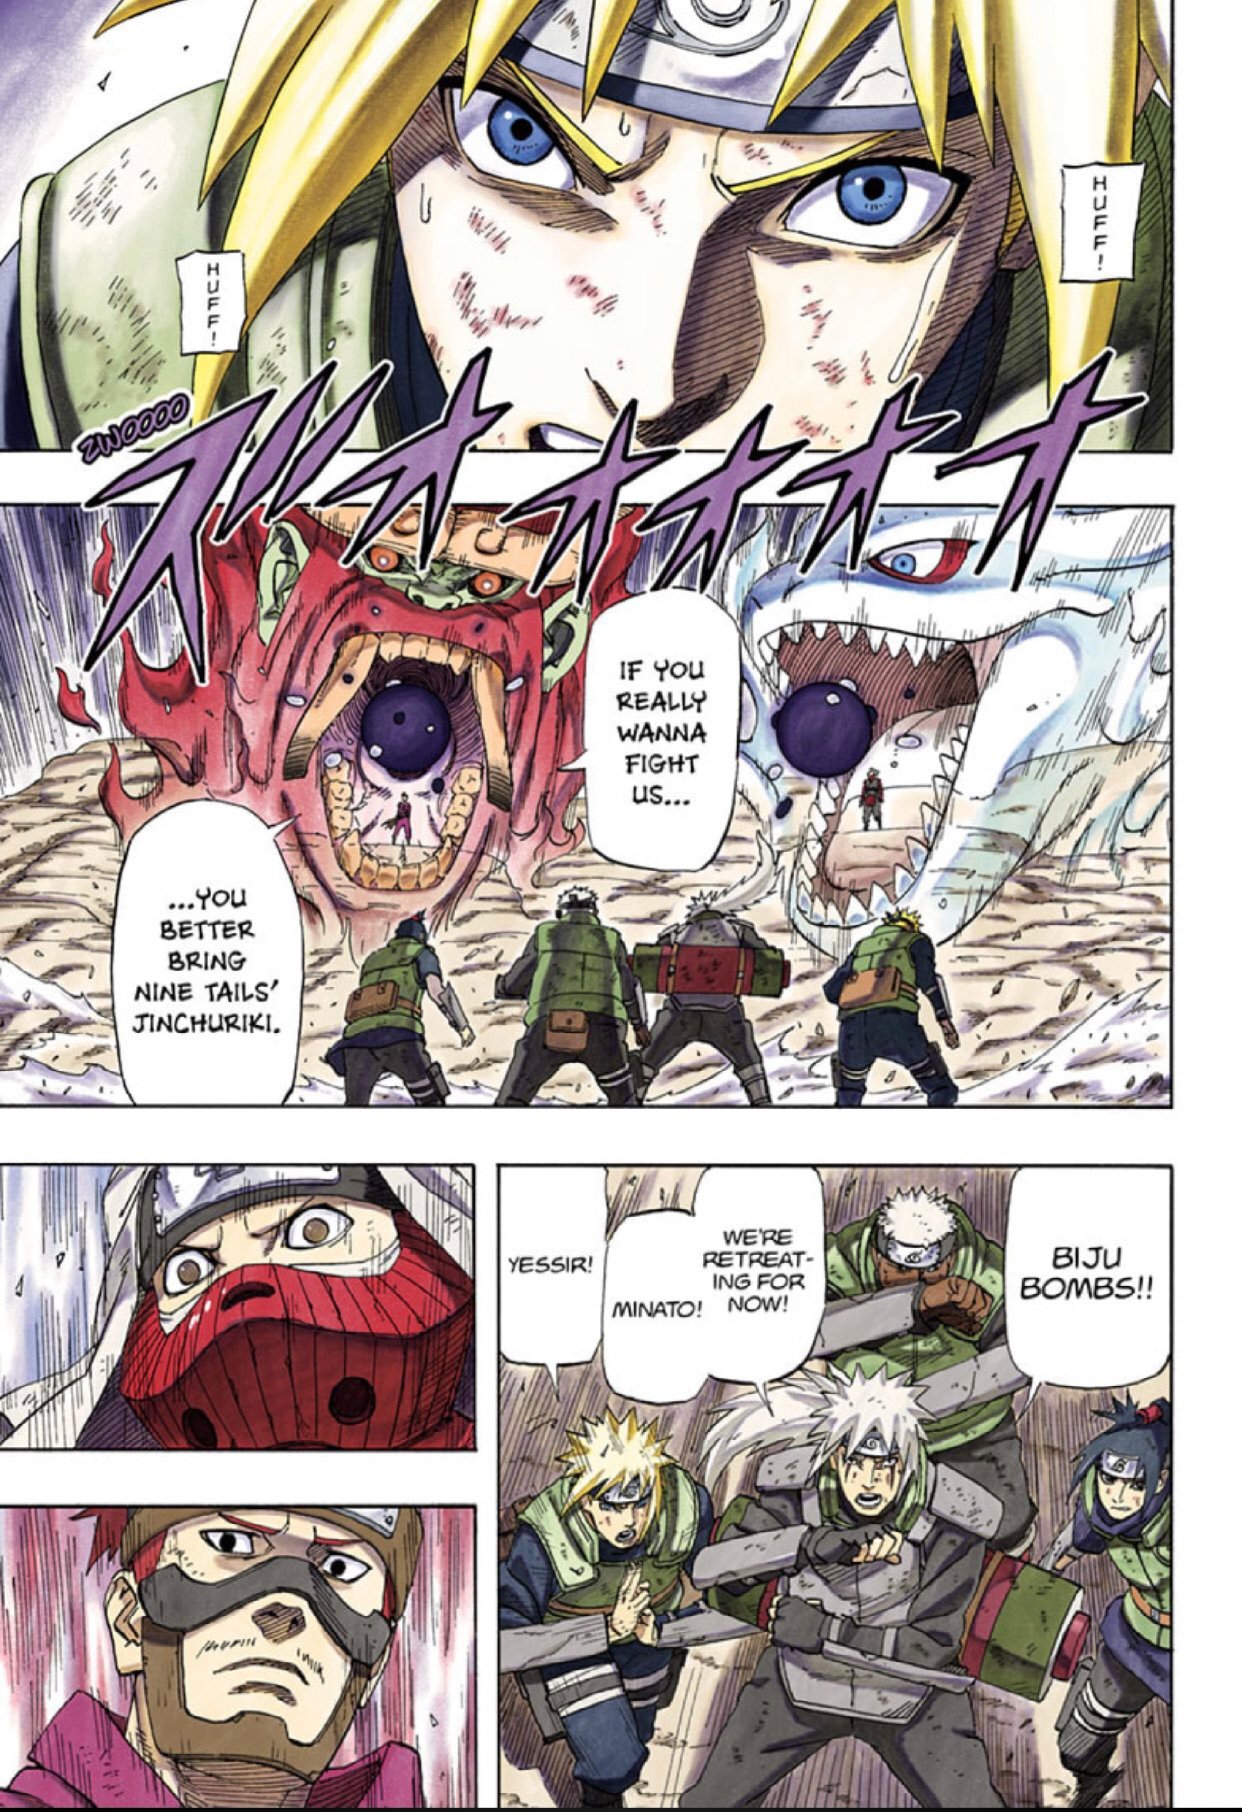 Naruto: The Whorl within the Spiral - Masashi Kishimoto